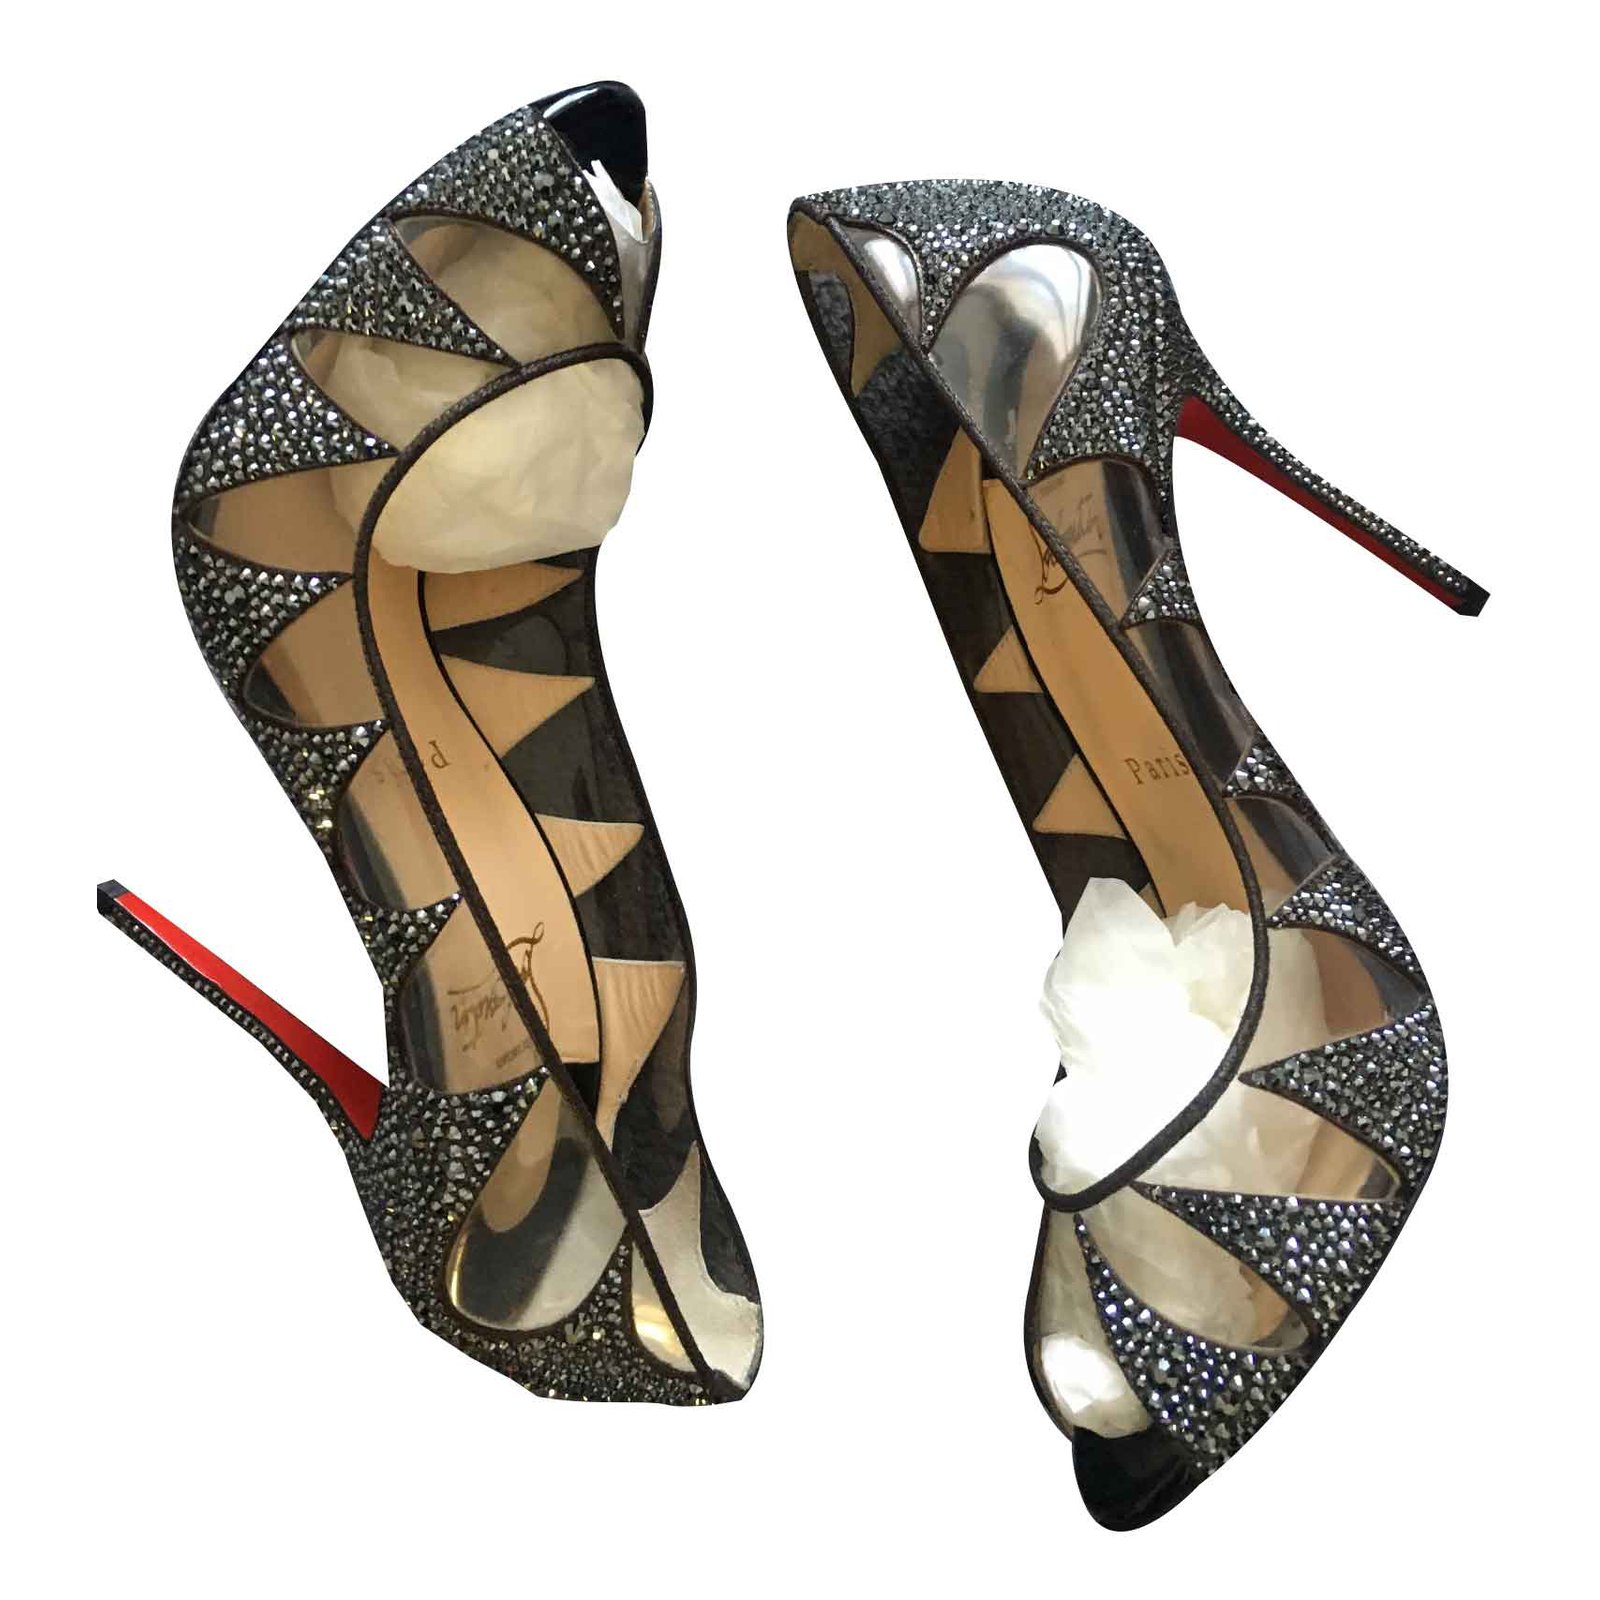 louboutin grey heels